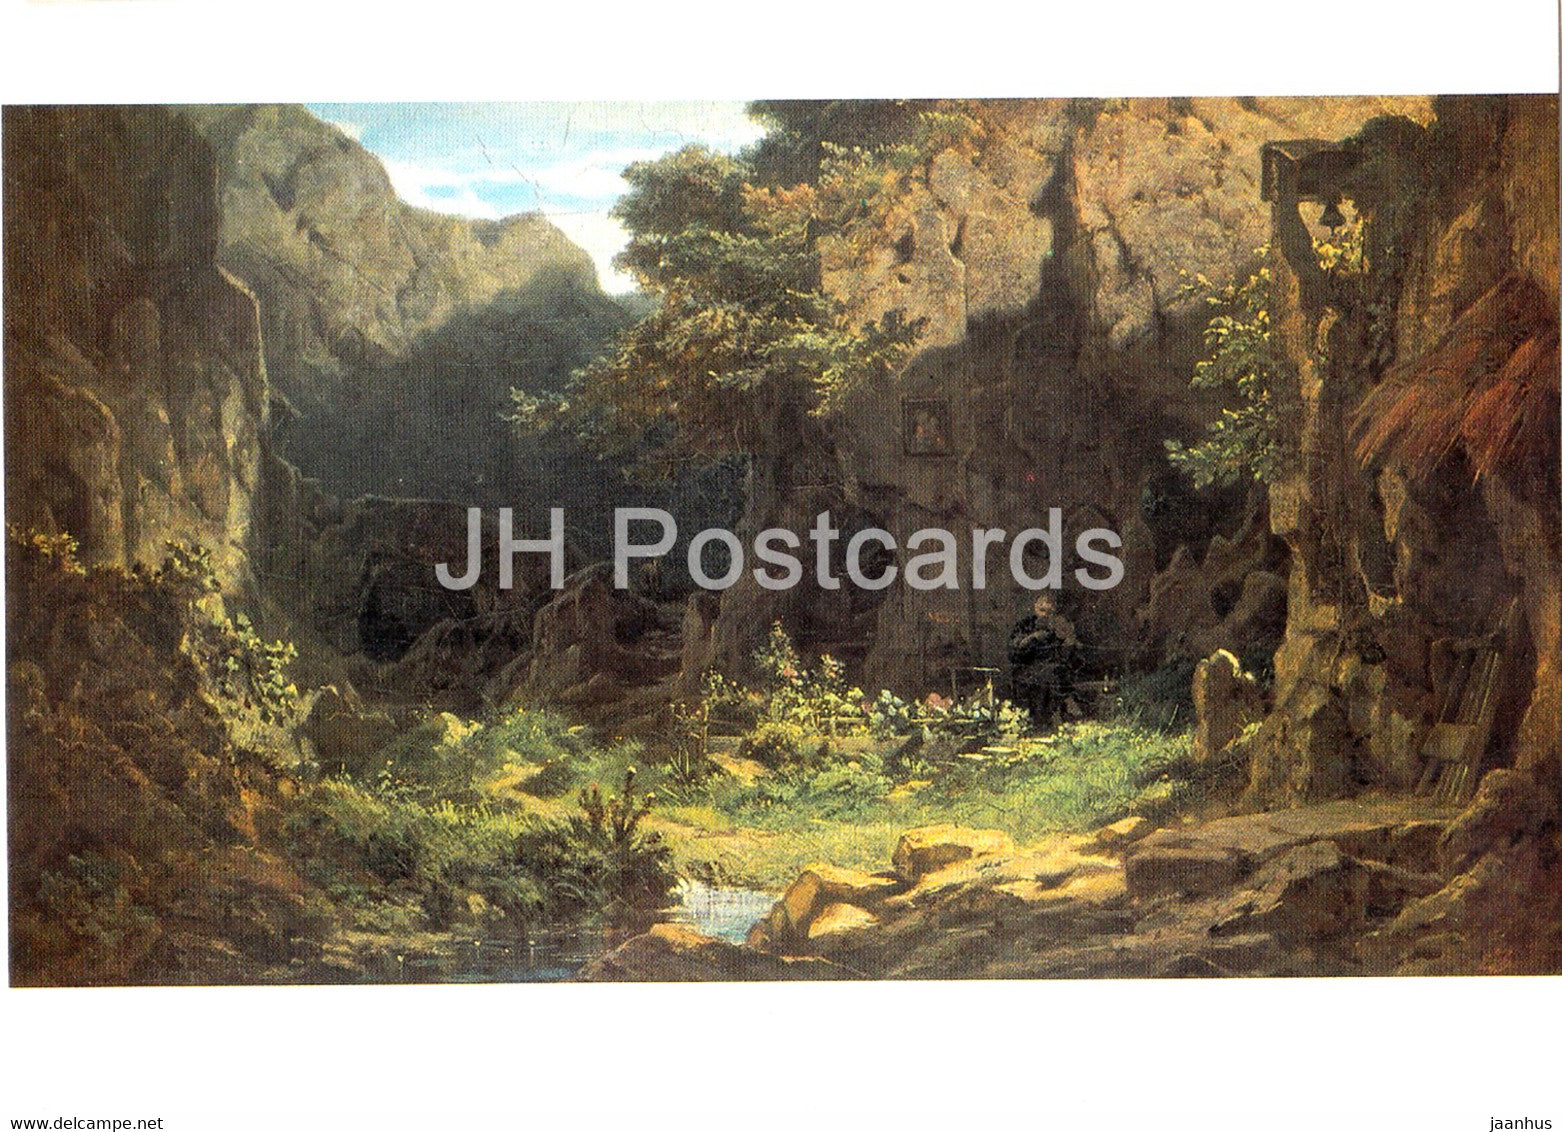 painting by Carl Spitzweg - Einsiedler Violine spielend - Hermit playing Violin - German art - Germany - unused - JH Postcards